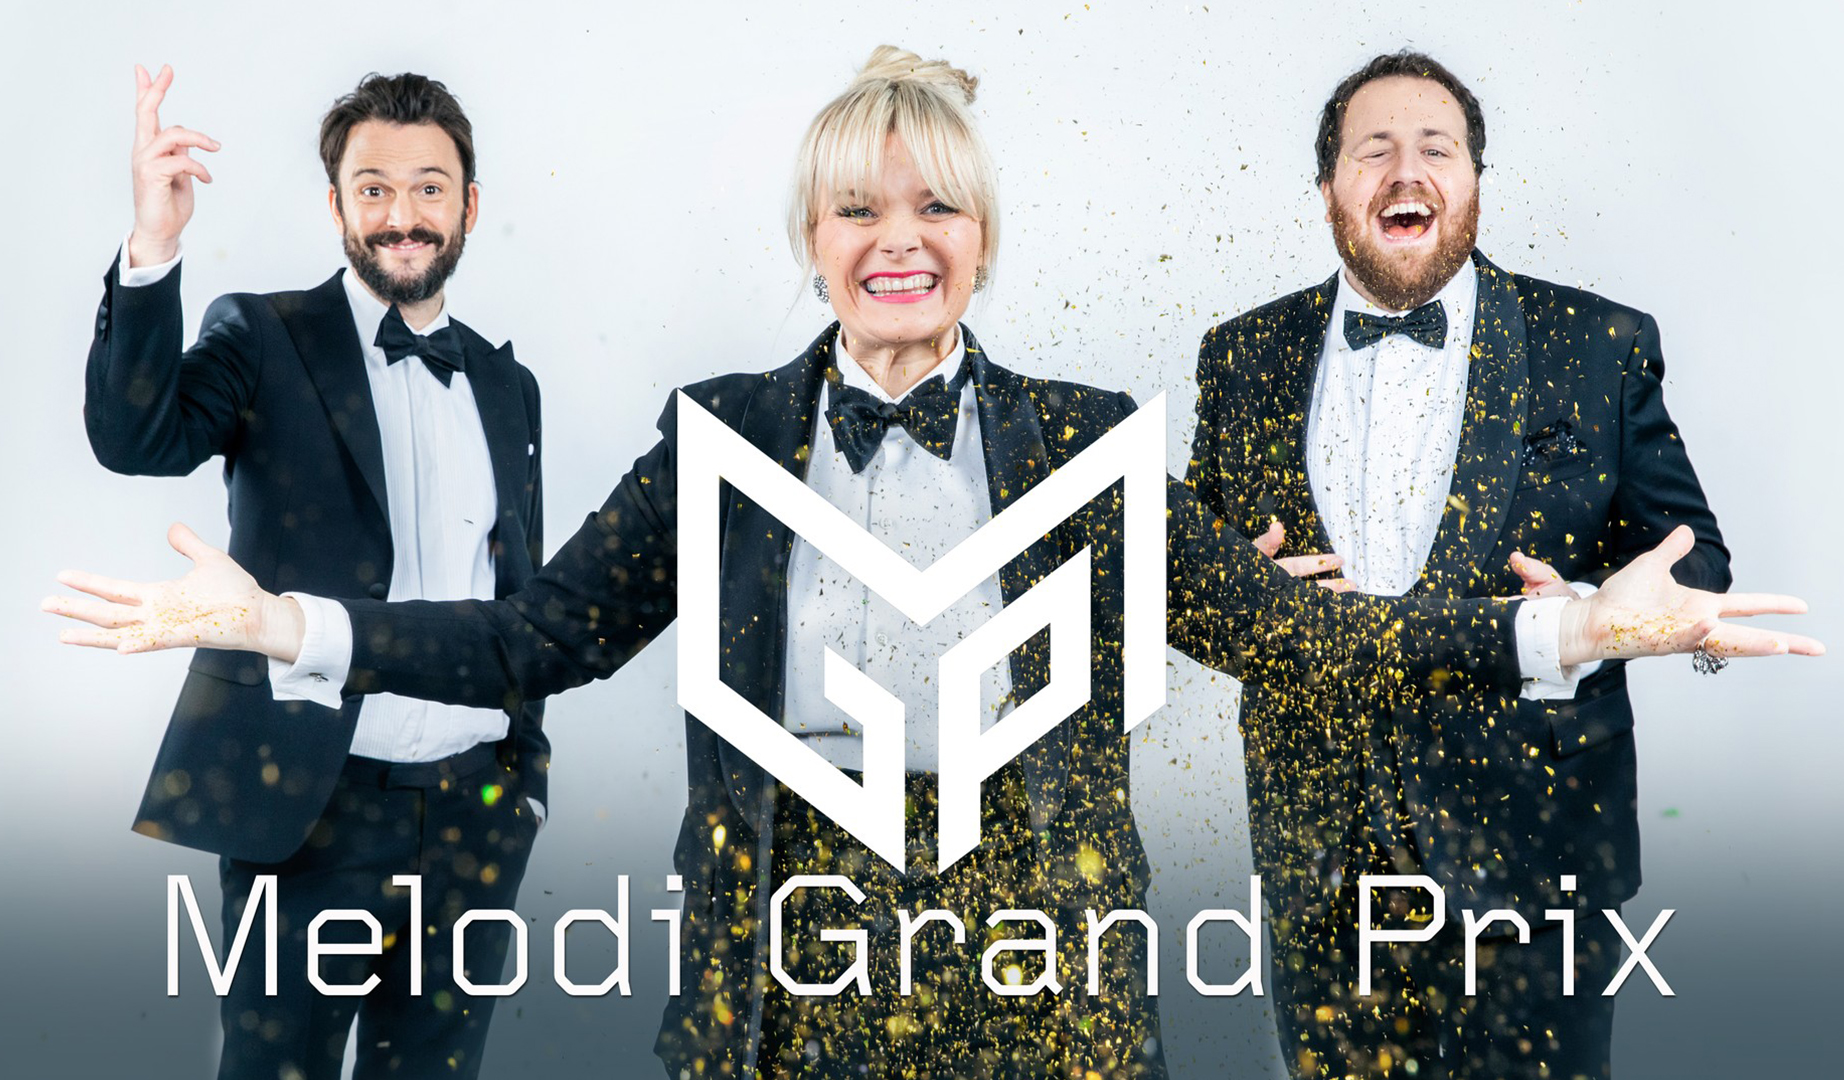 Noruega emitirá la “repesca” del Melodi Grand Prix 2021 el 15 de Febrero en televisión